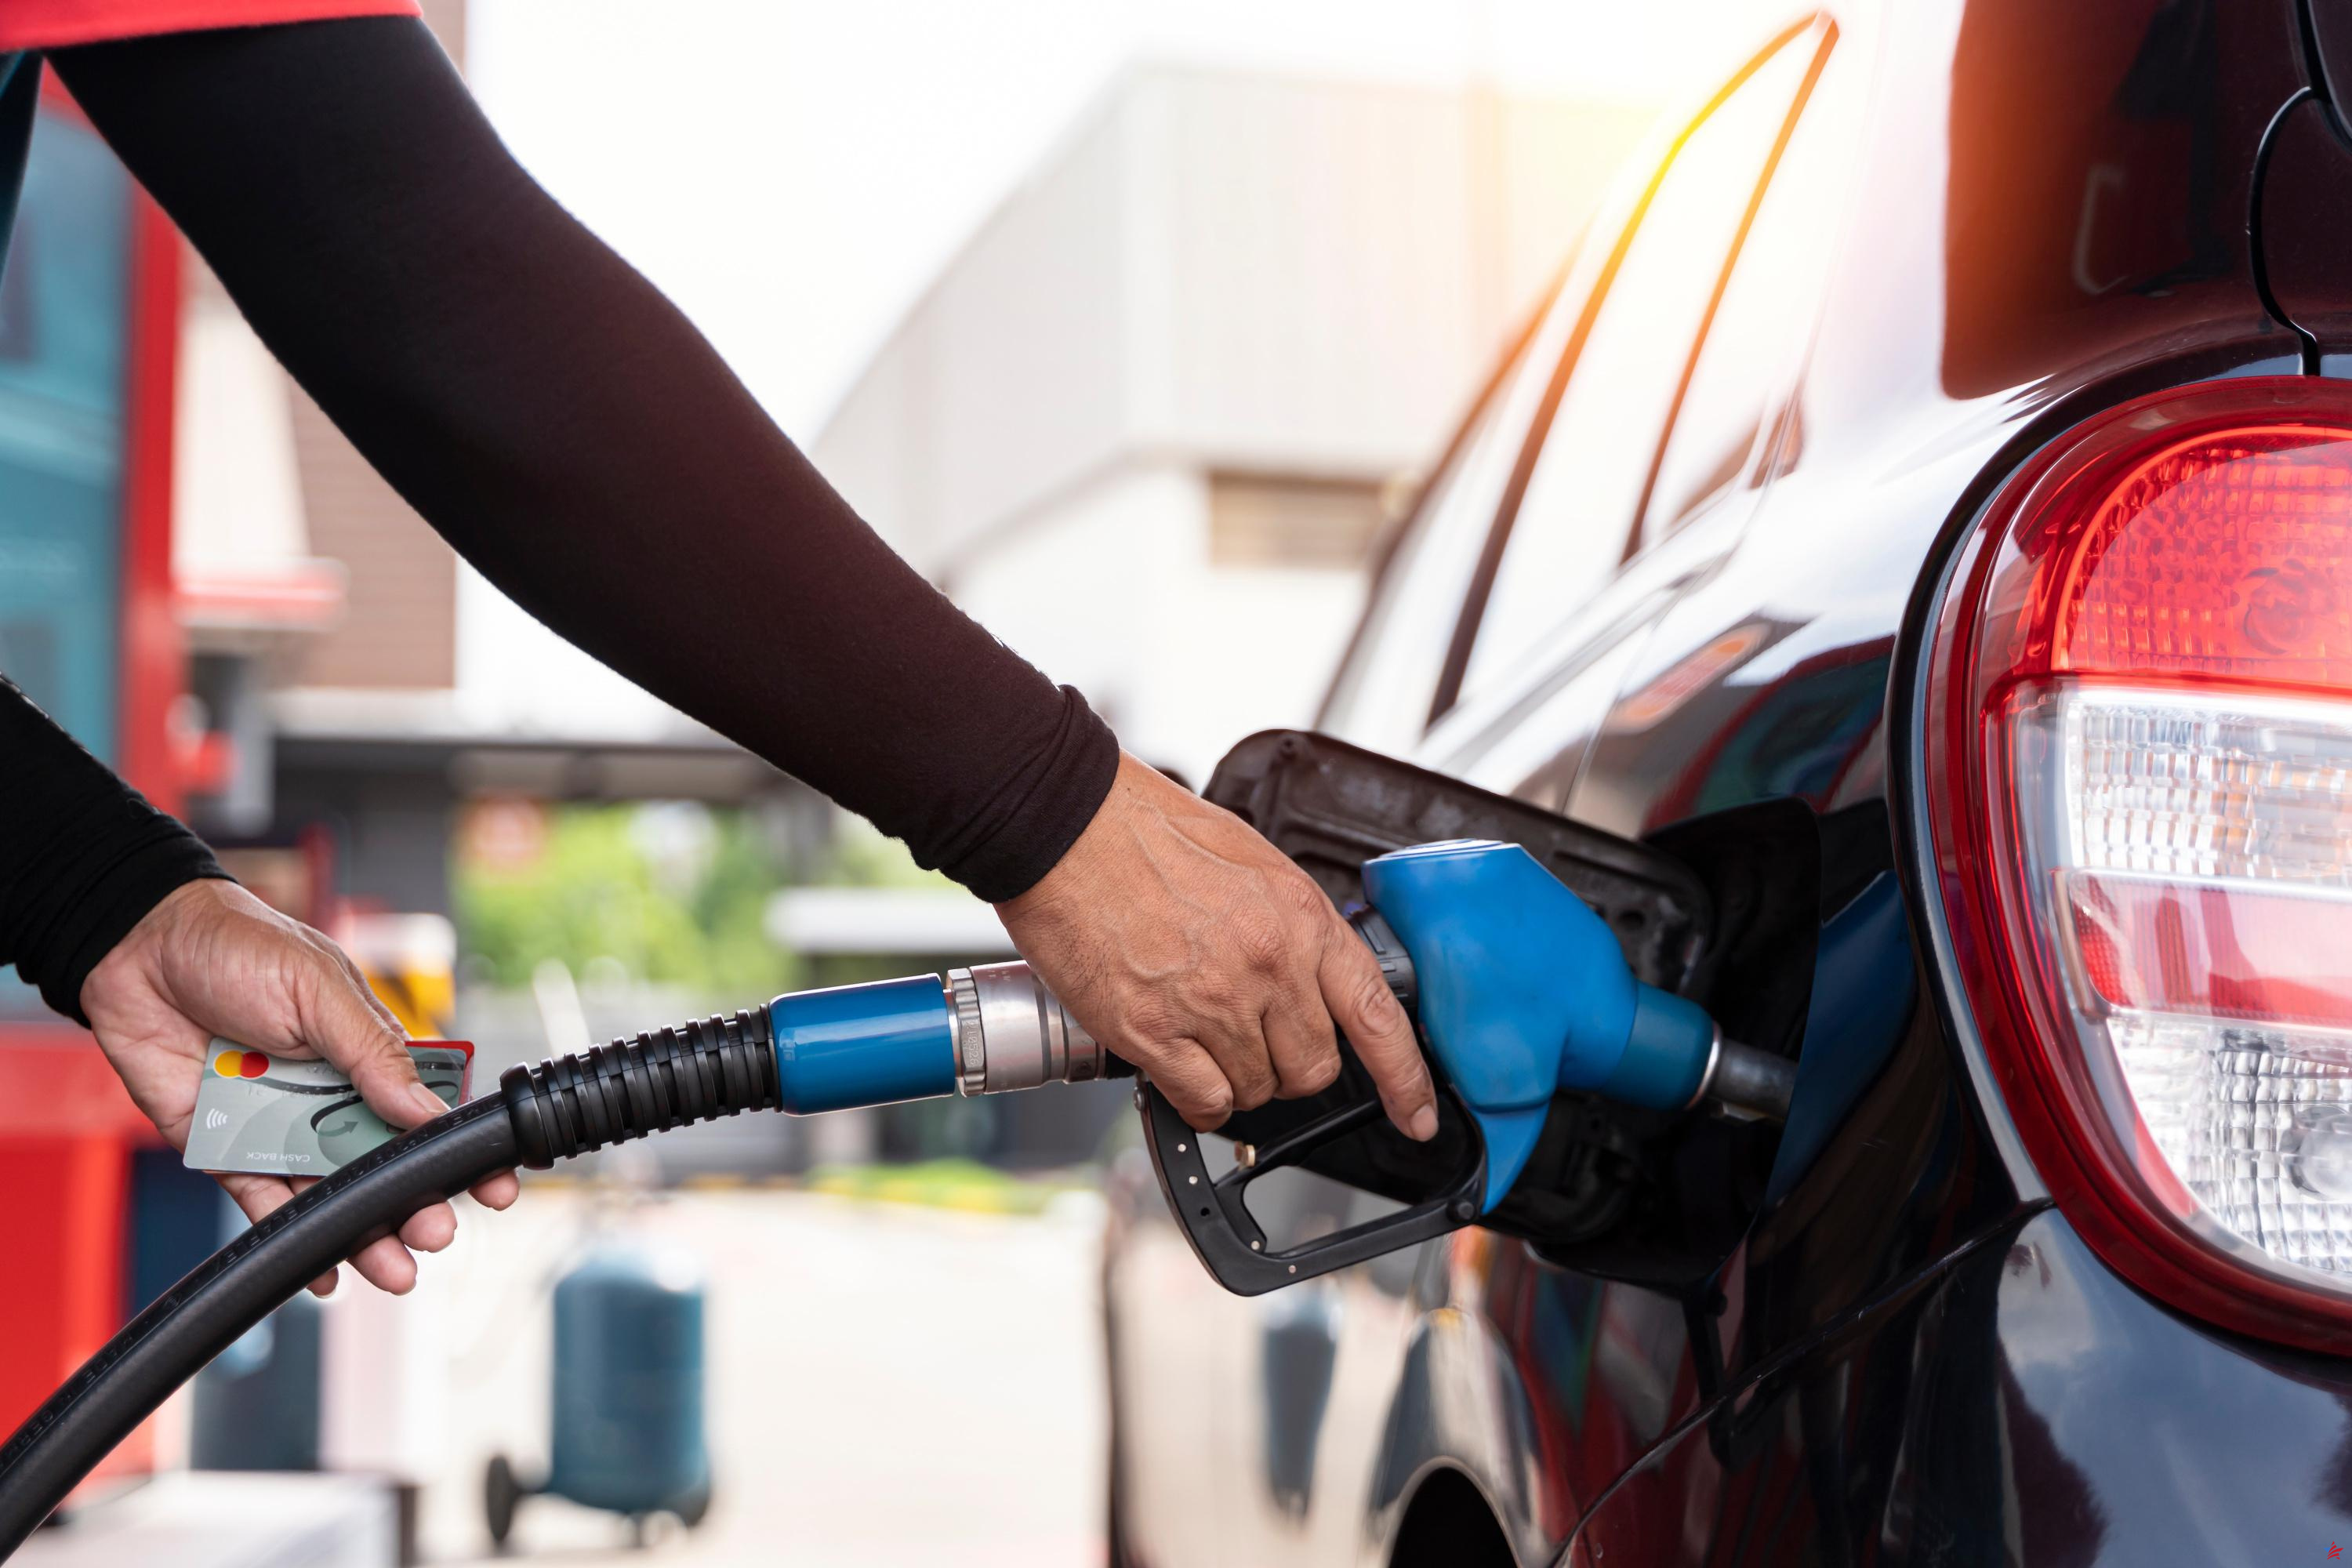 Combustibles: los márgenes de las distribuidoras alcanzan niveles “no aceptables”, según la asociación CLCV